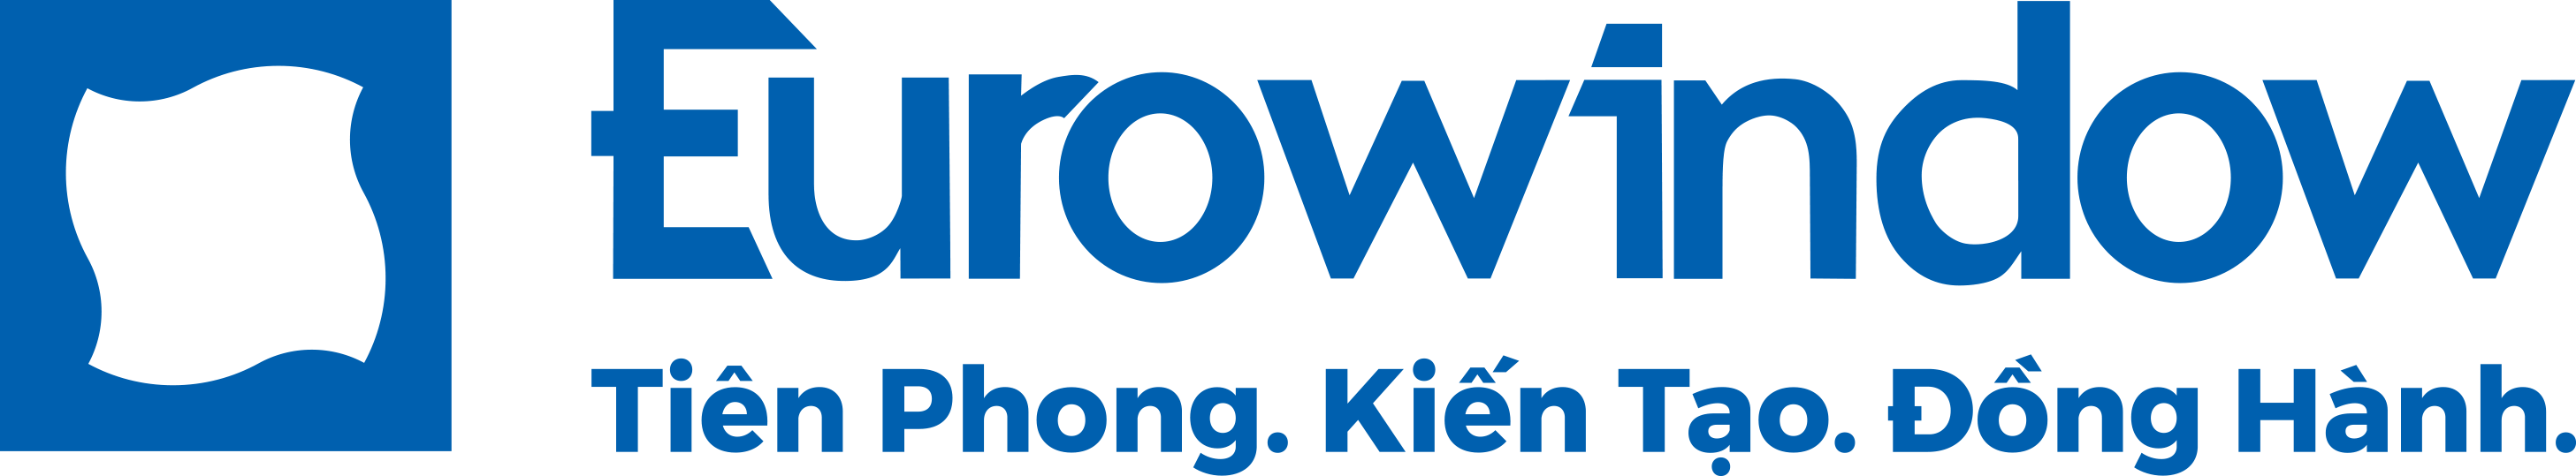 Eurowindow Group